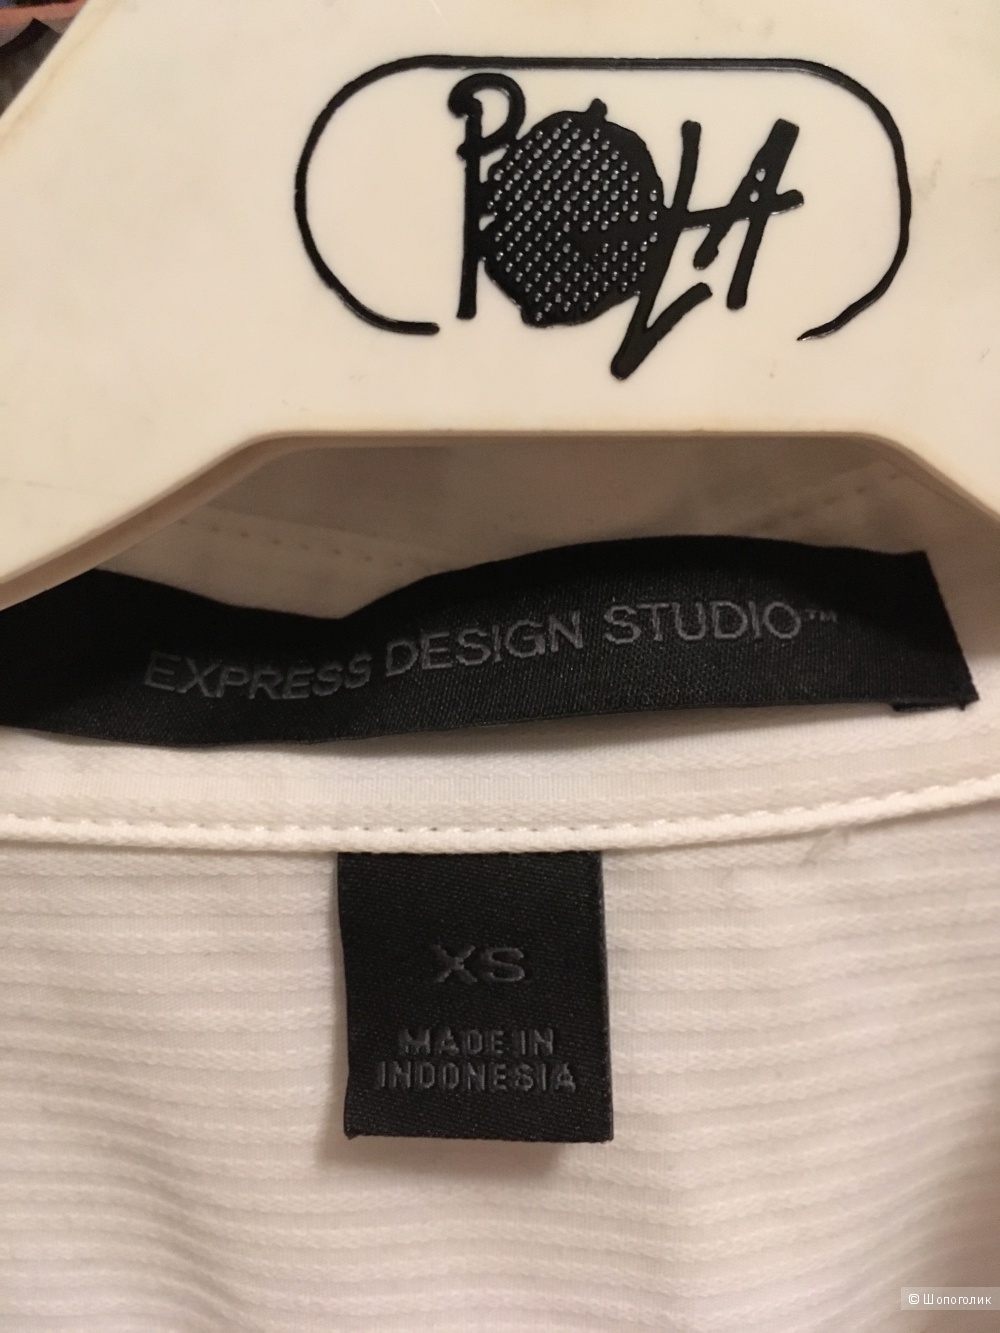 Рубашка Express Design Studio размер xs